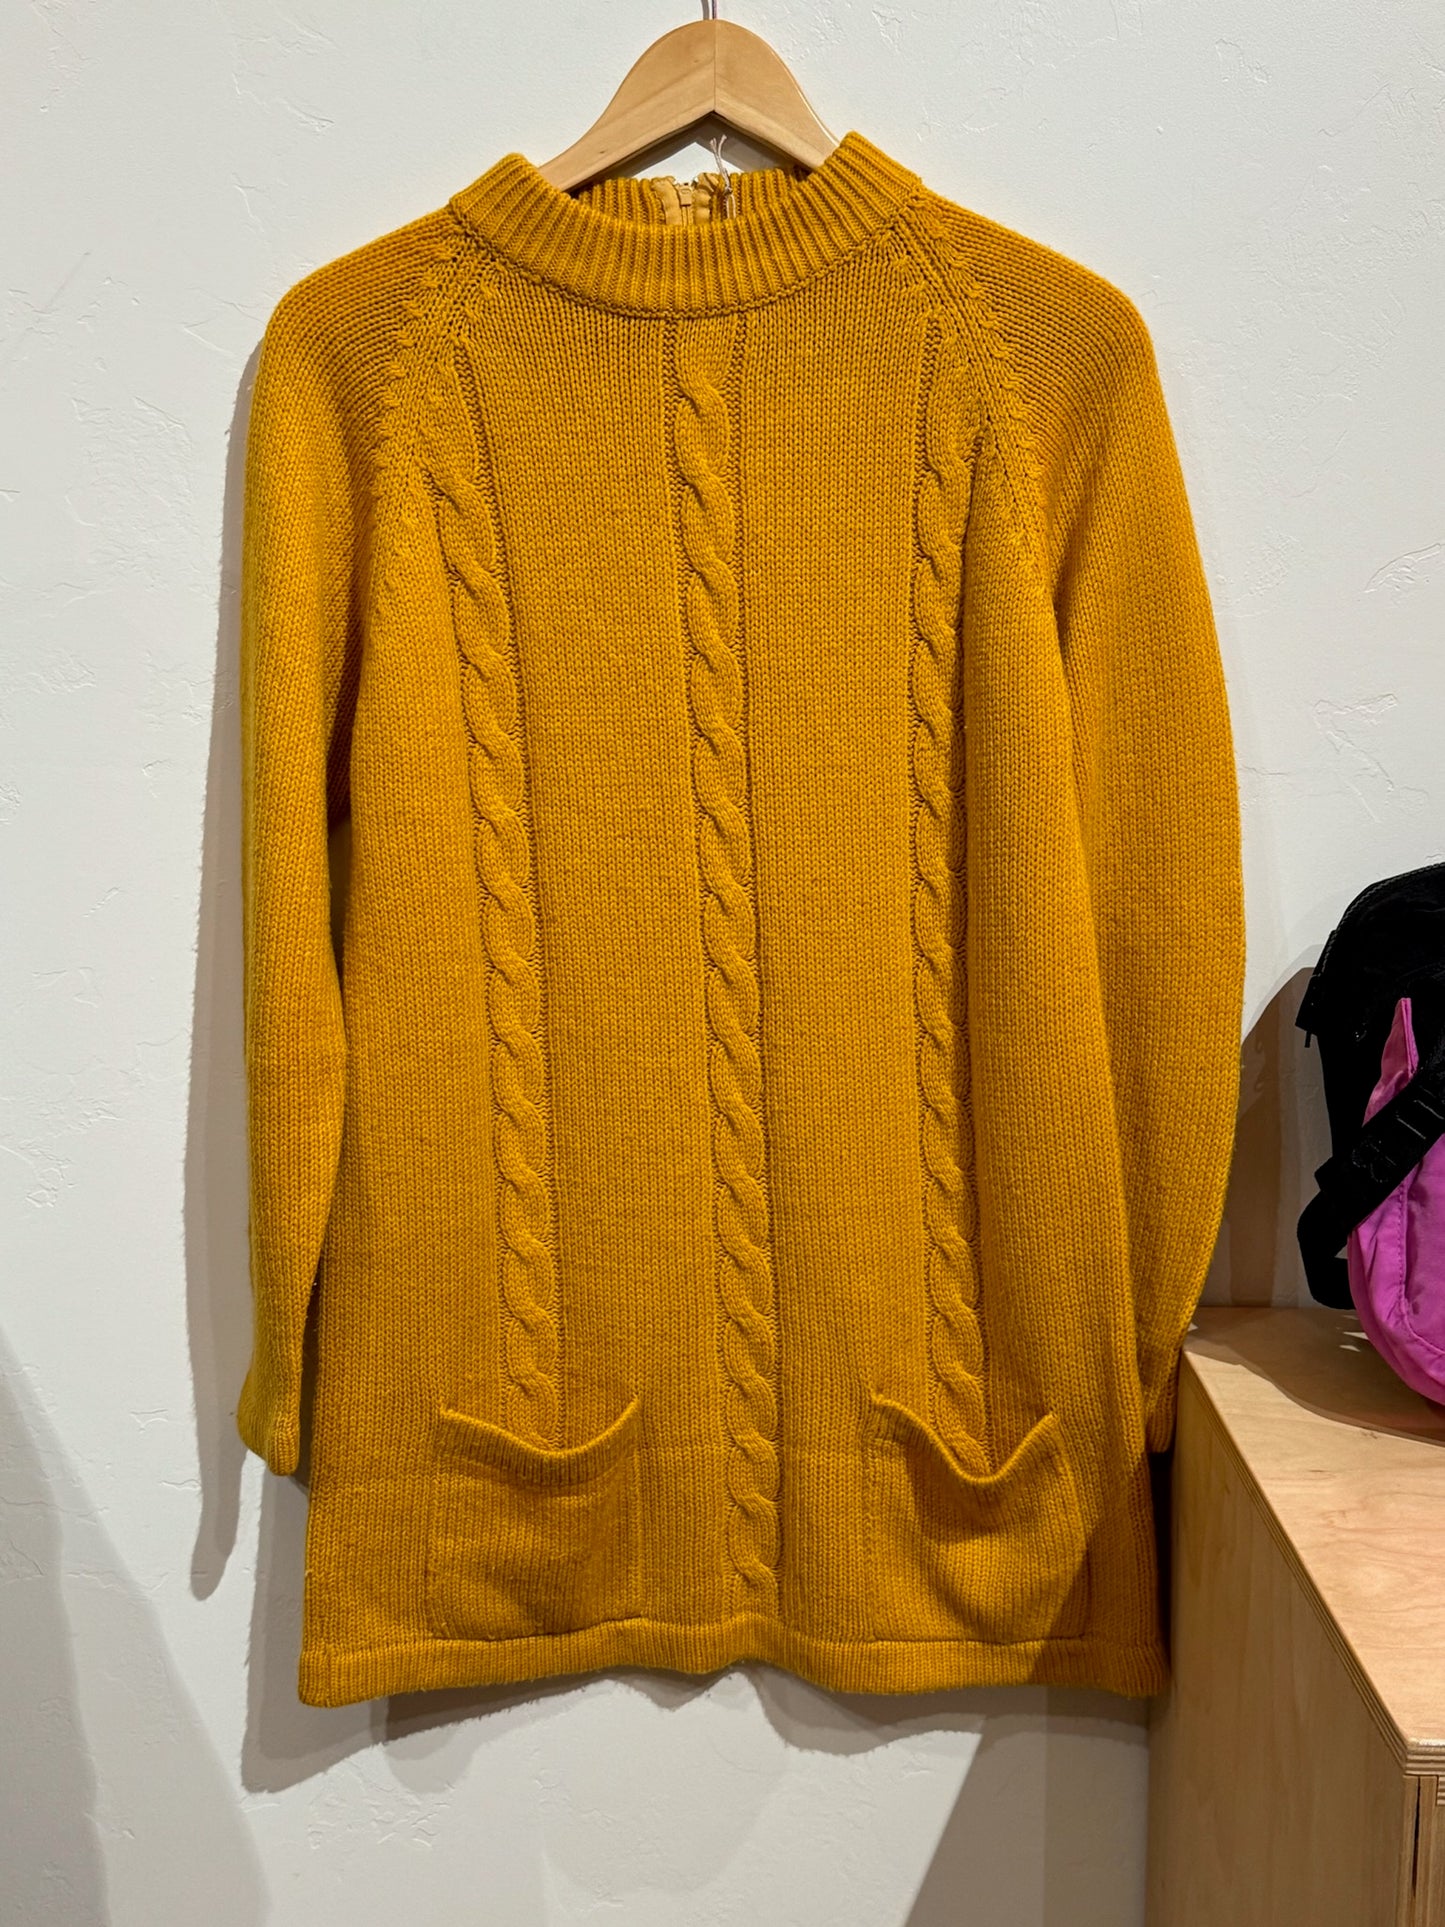 1970s Mini Sweater Dress